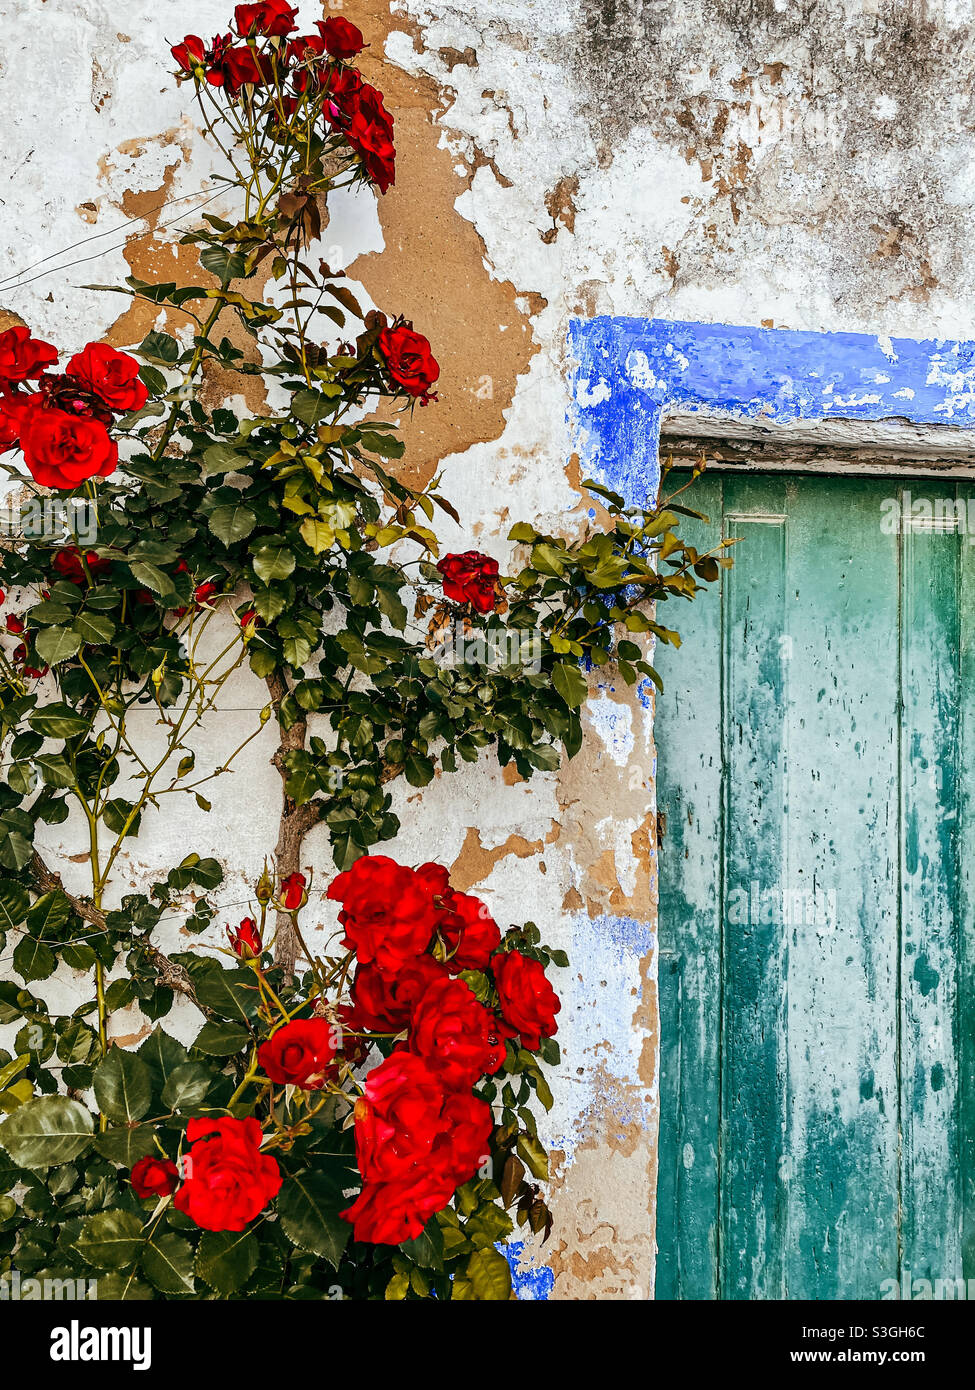 Ich fand diesen wunderschönen Rosenstrauch in Obidos, Portugal. Und ich liebe diese blau-rot-weiße Pallette einfach! Stockfoto